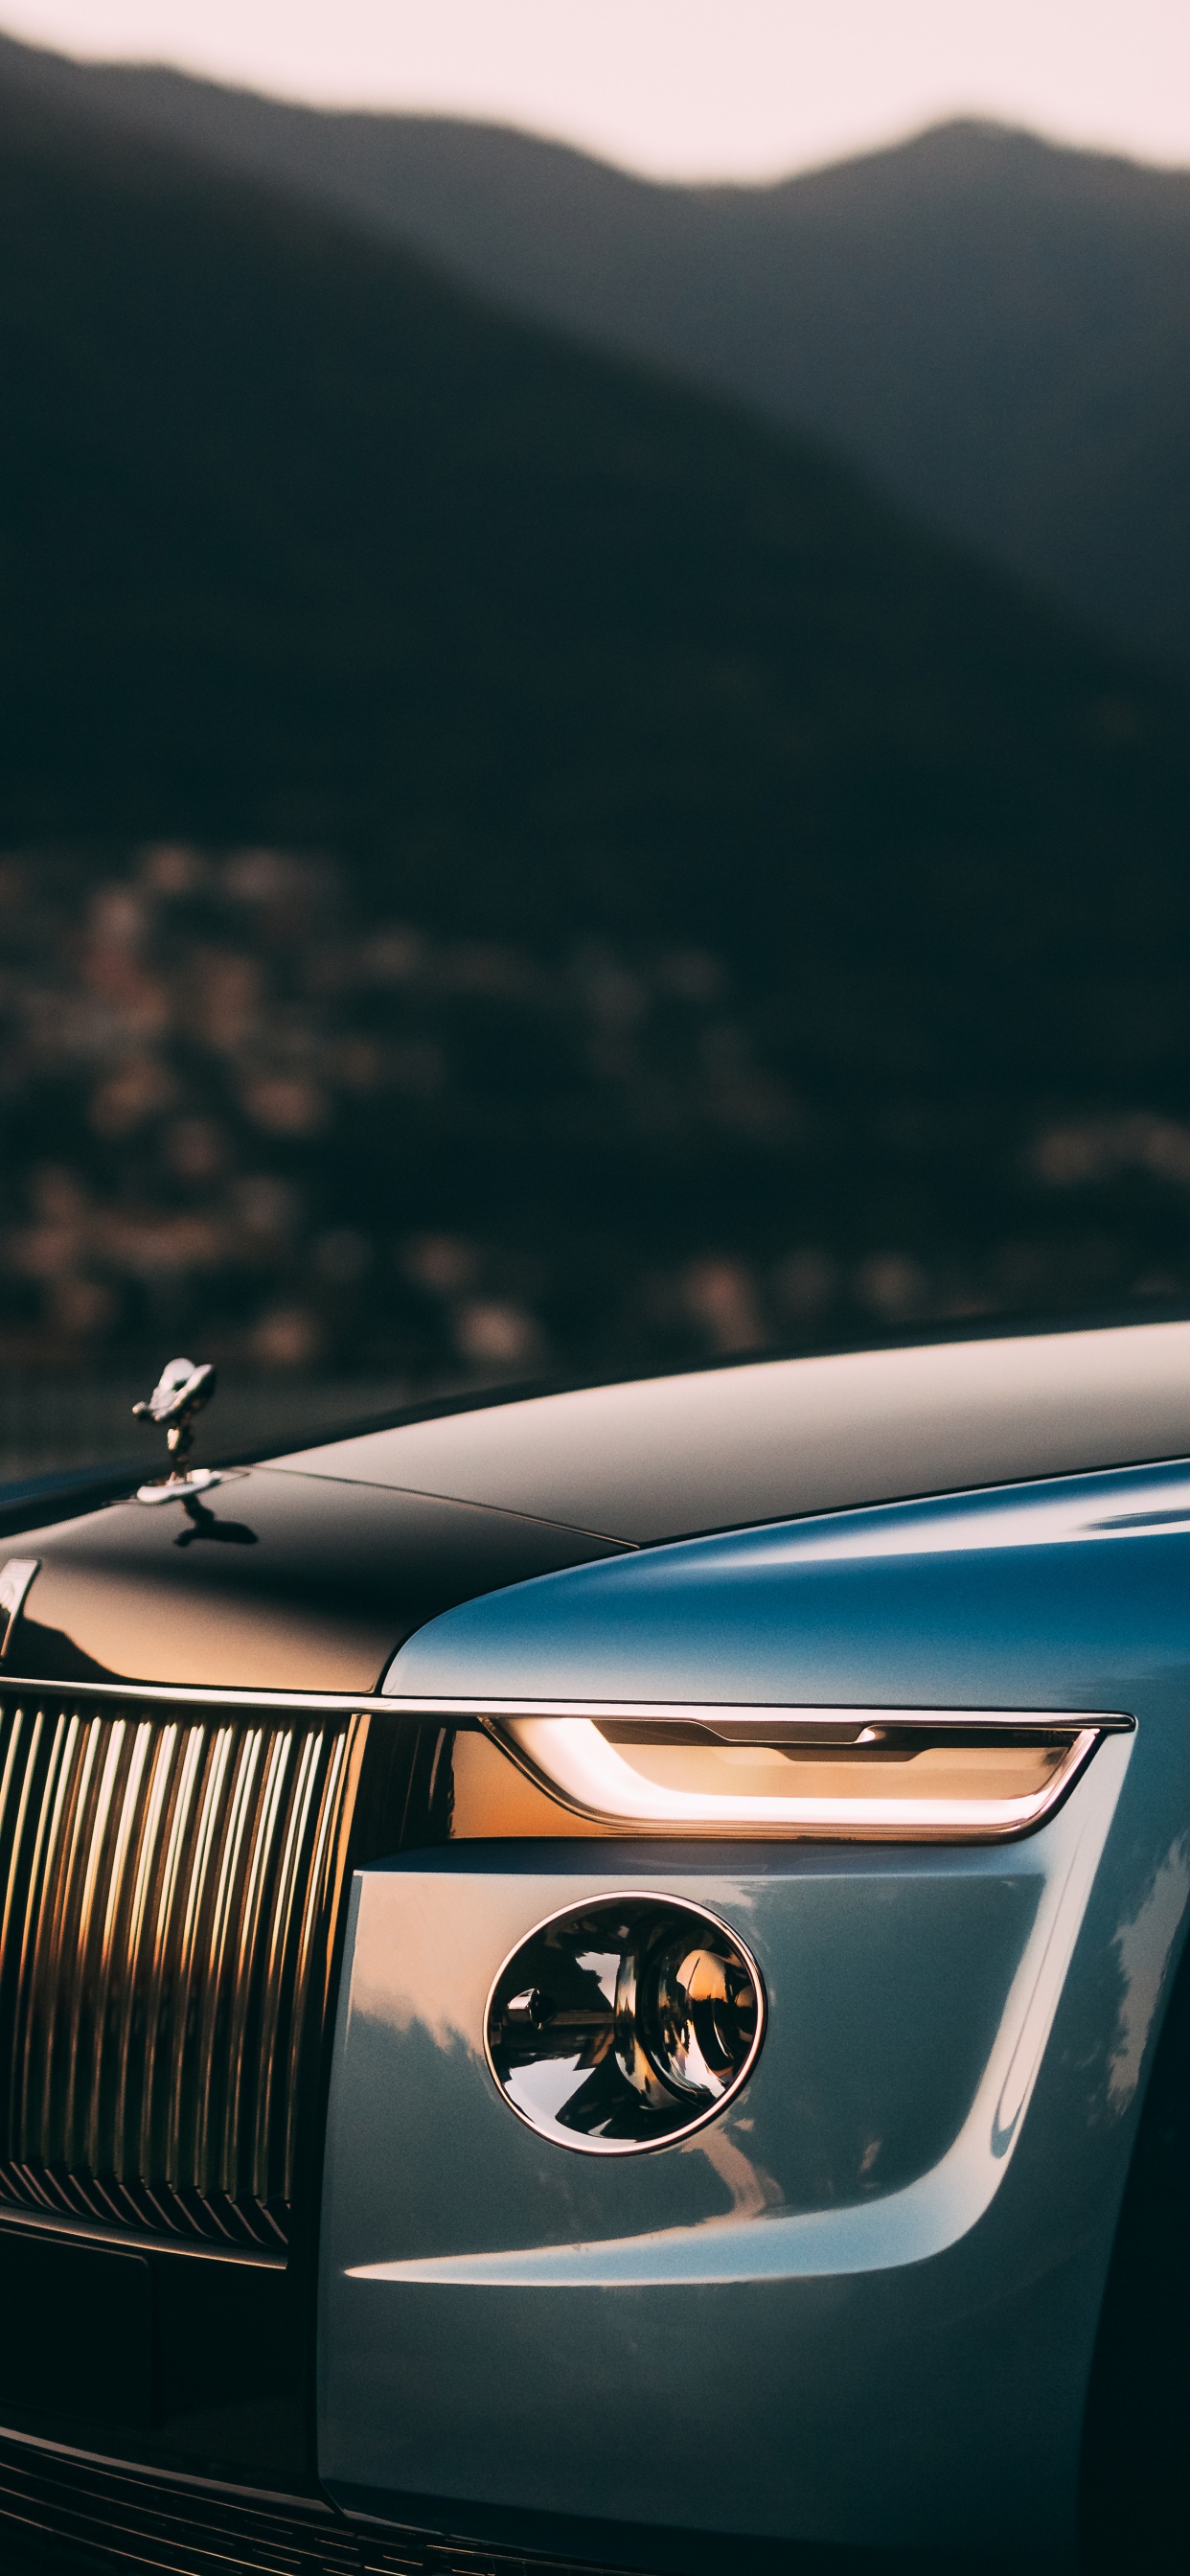 Đam mê những chiếc xe sang trọng? Hình ảnh liên quan đến Luxury cars chắc chắn sẽ khiến bạn phải dừng chân xem ngay lập tức. Bạn sẽ được ngắm nhìn những chiếc xe đẹp và sang trọng với thiết kế tuyệt đẹp và chất lượng tuyệt vời. 